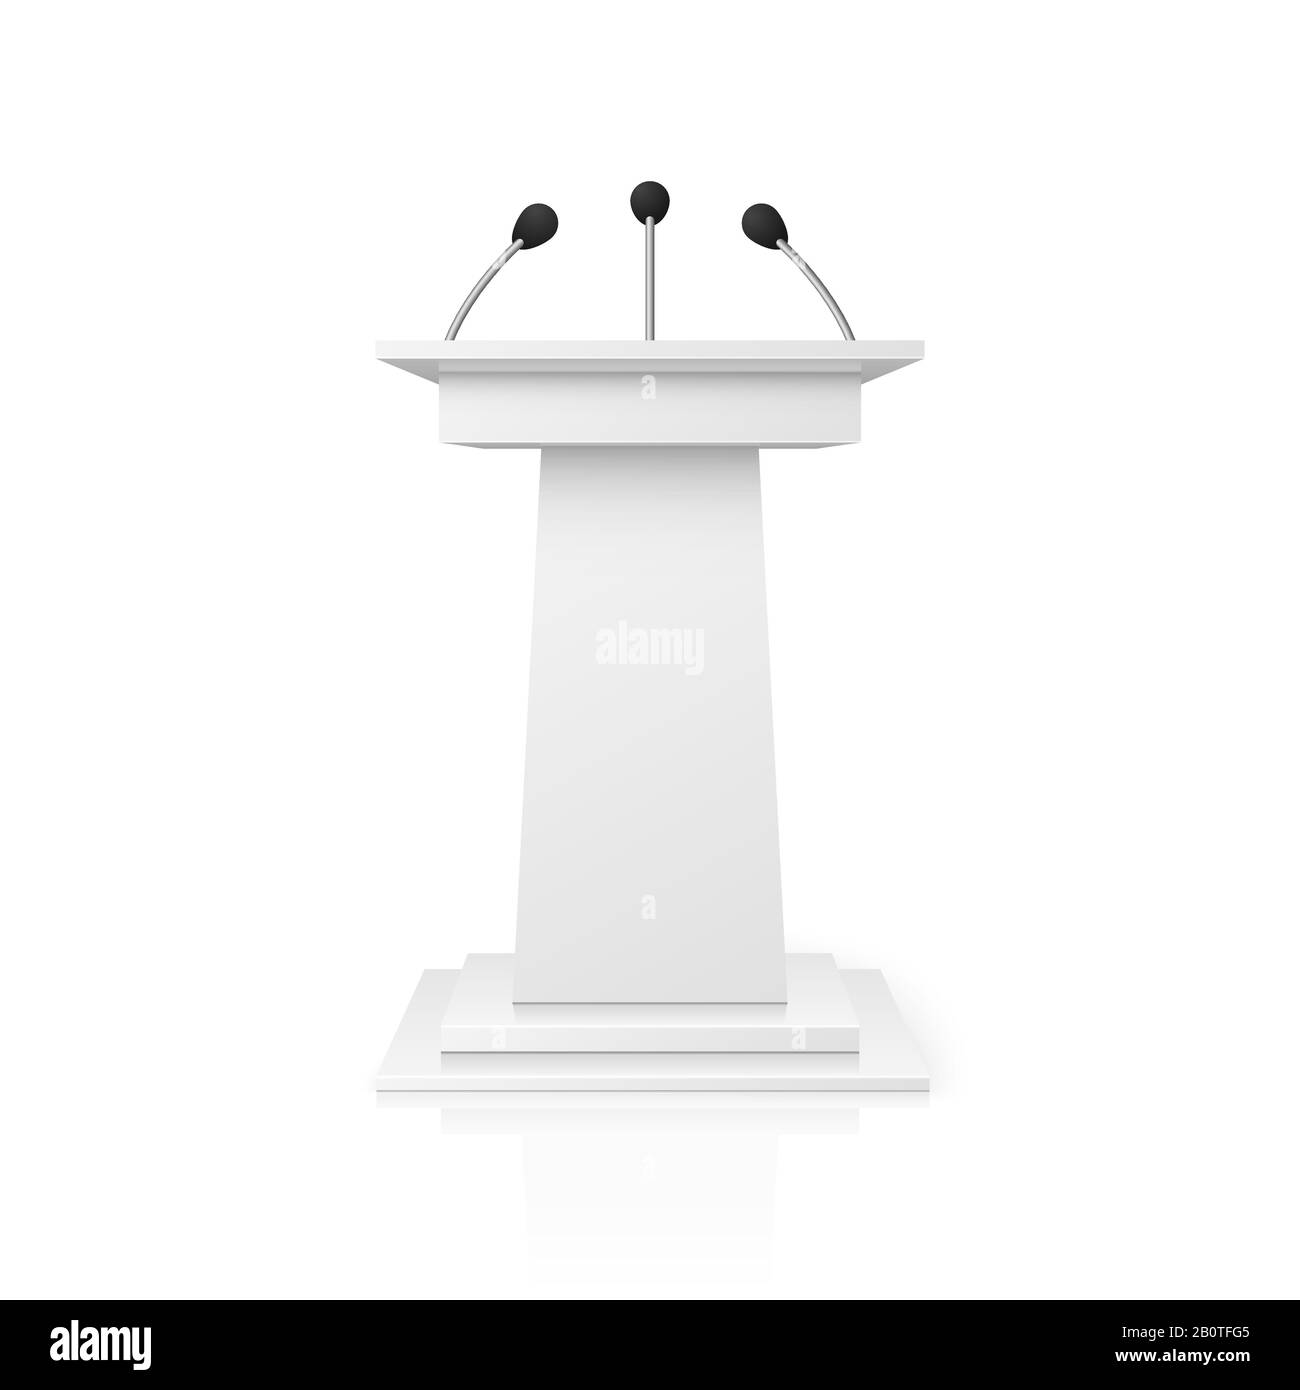 Weißer leerer Podiumstribun für öffentliche Rede mit Mikrofonen Vektorgrafiken. Standvortrag und öffentlicher Stand Stock Vektor